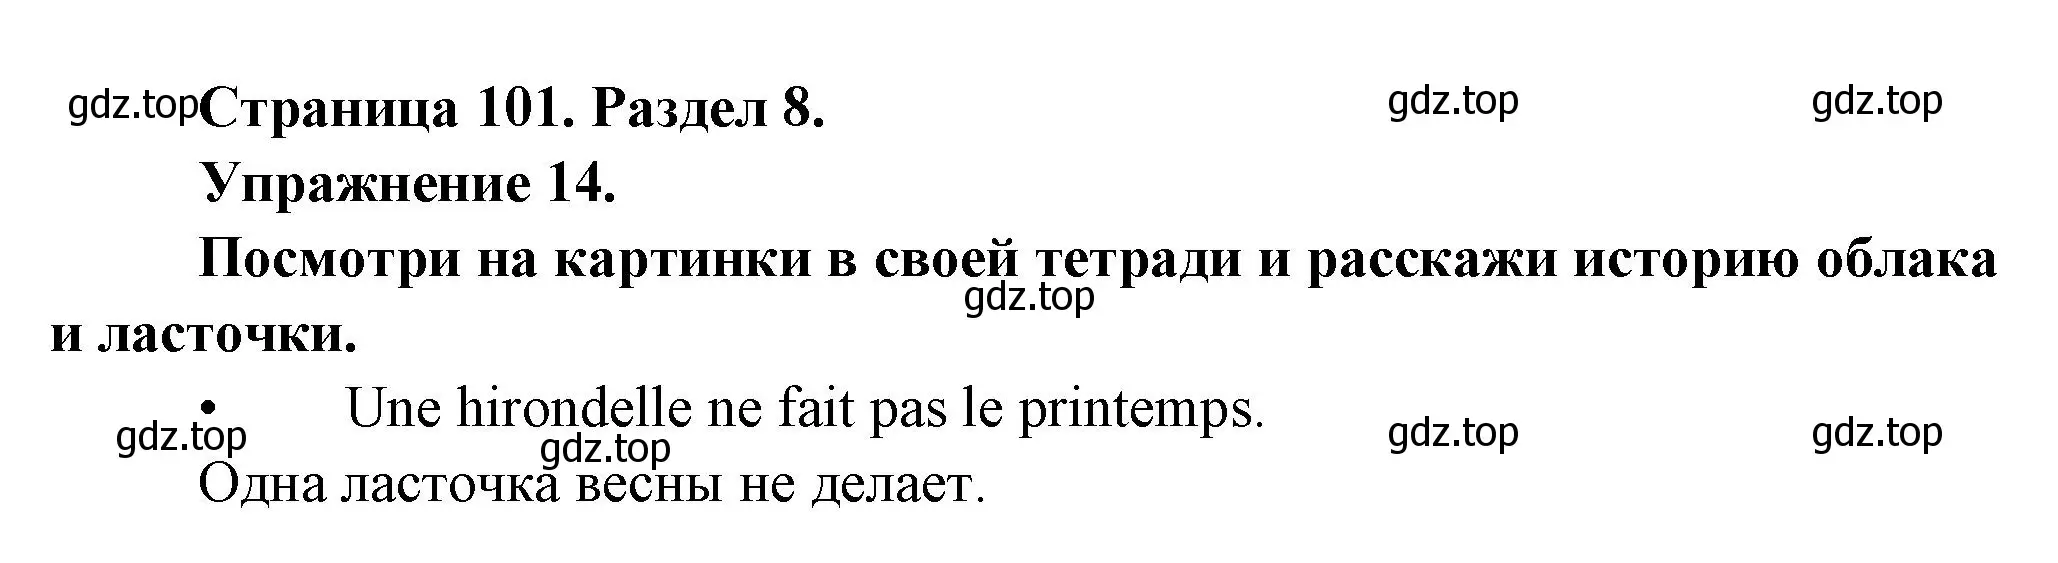 Решение номер 14 (страница 101) гдз по французскому языку 5 класс Береговская, Белосельская, учебник 2 часть